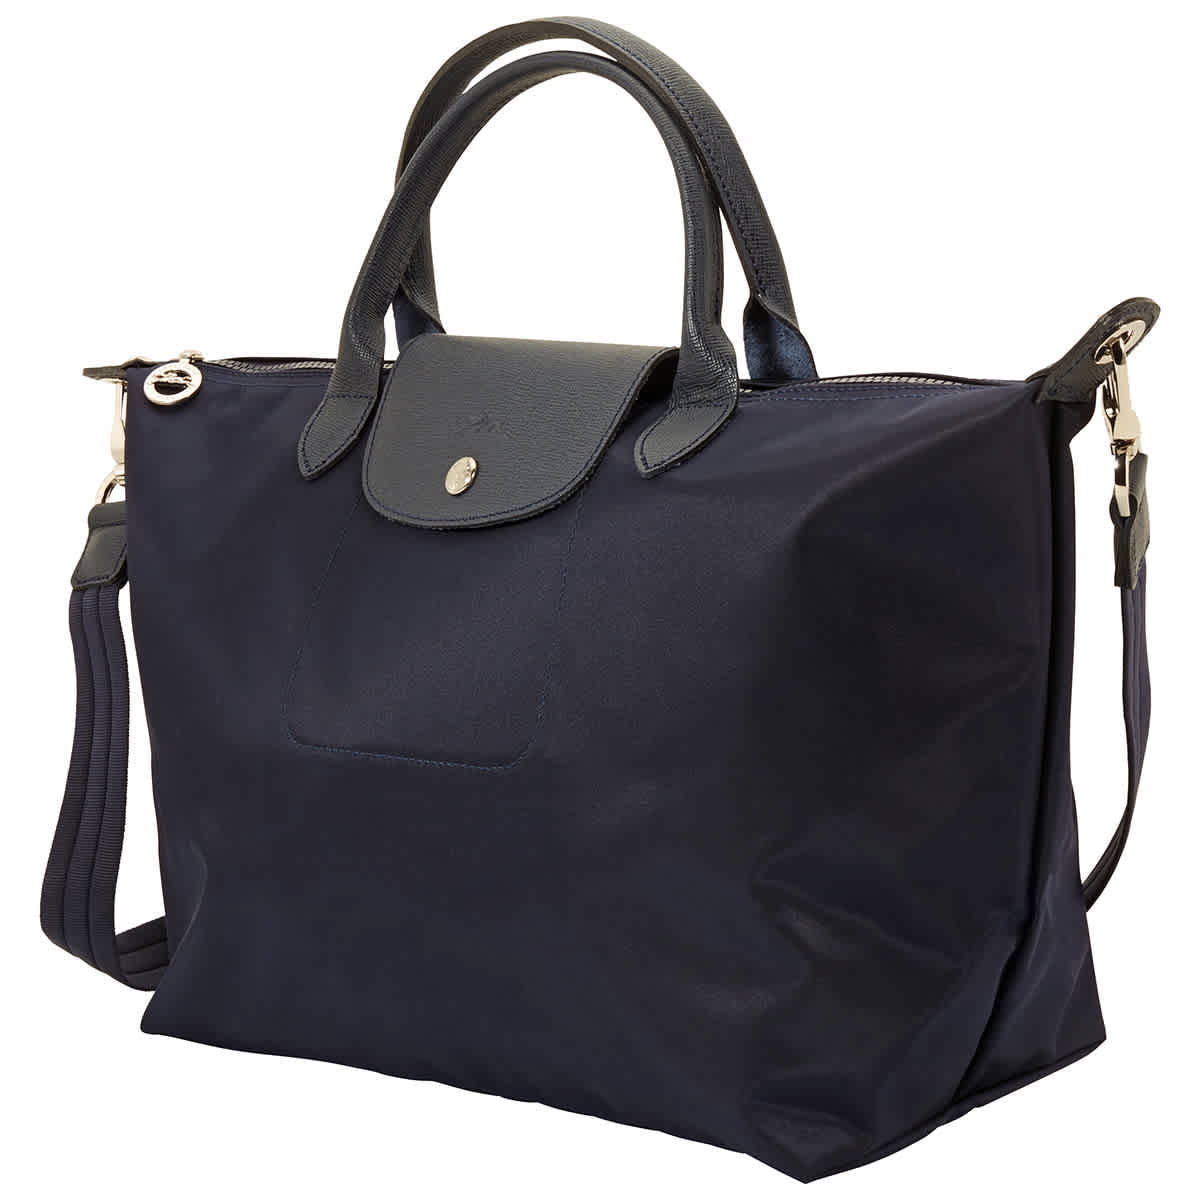 Longchamp Le Pliage Neo Top Handle Tote Bag In Black: Handbags